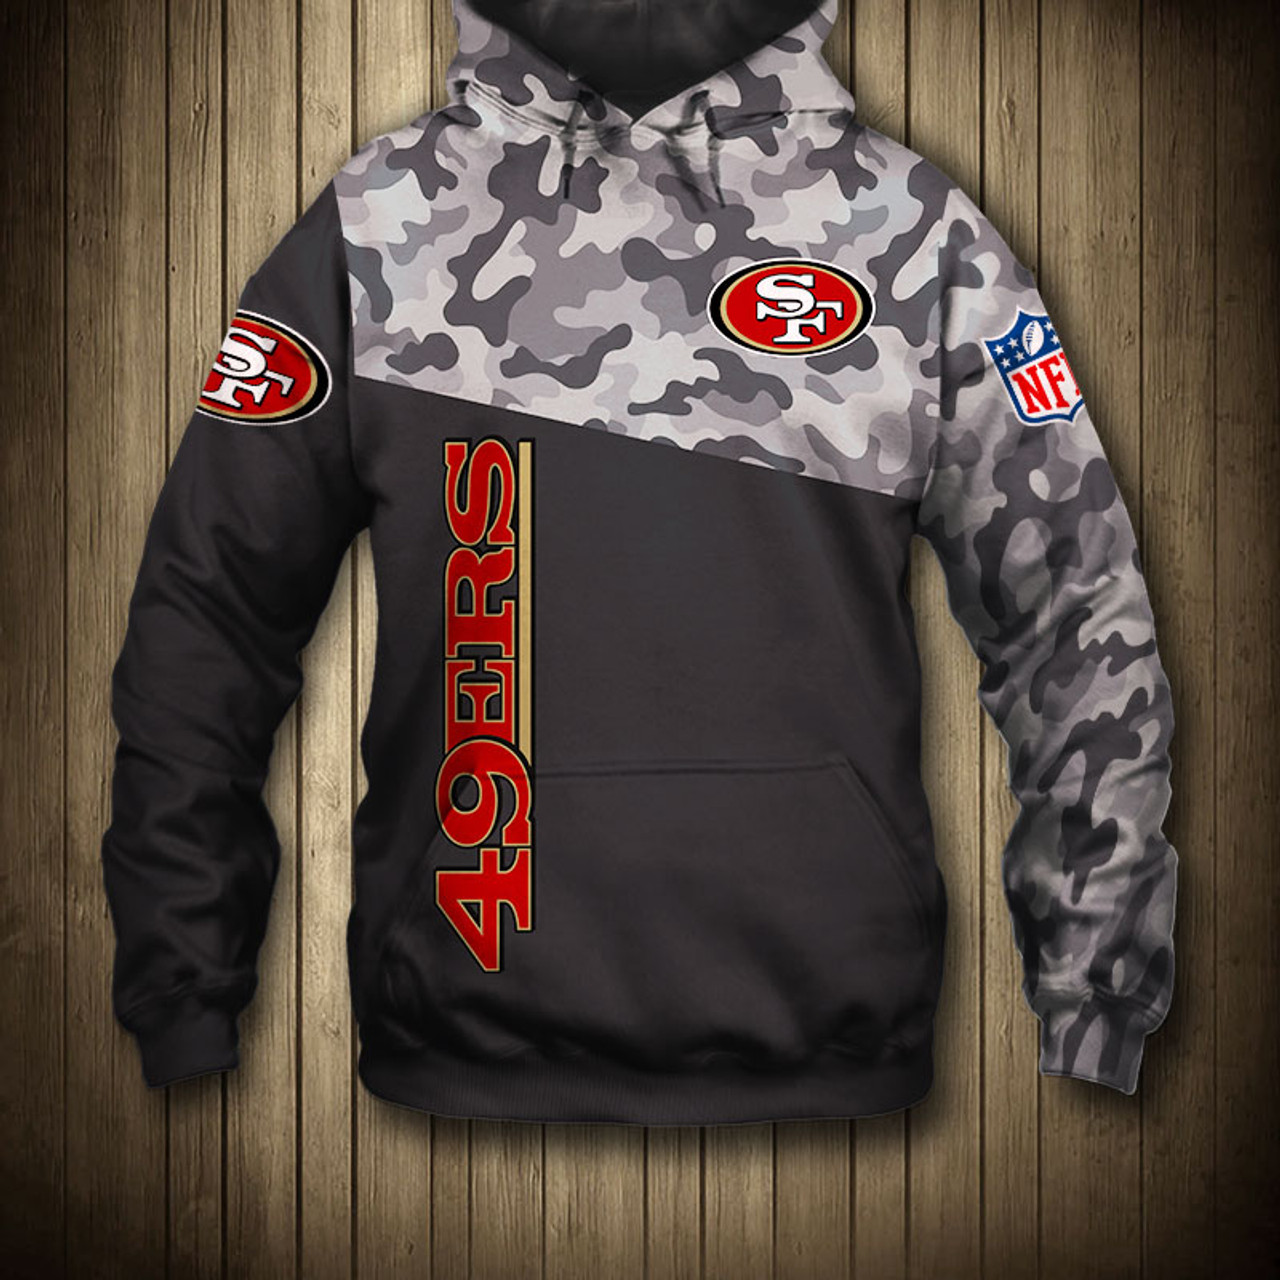 49ers pullover hoodie